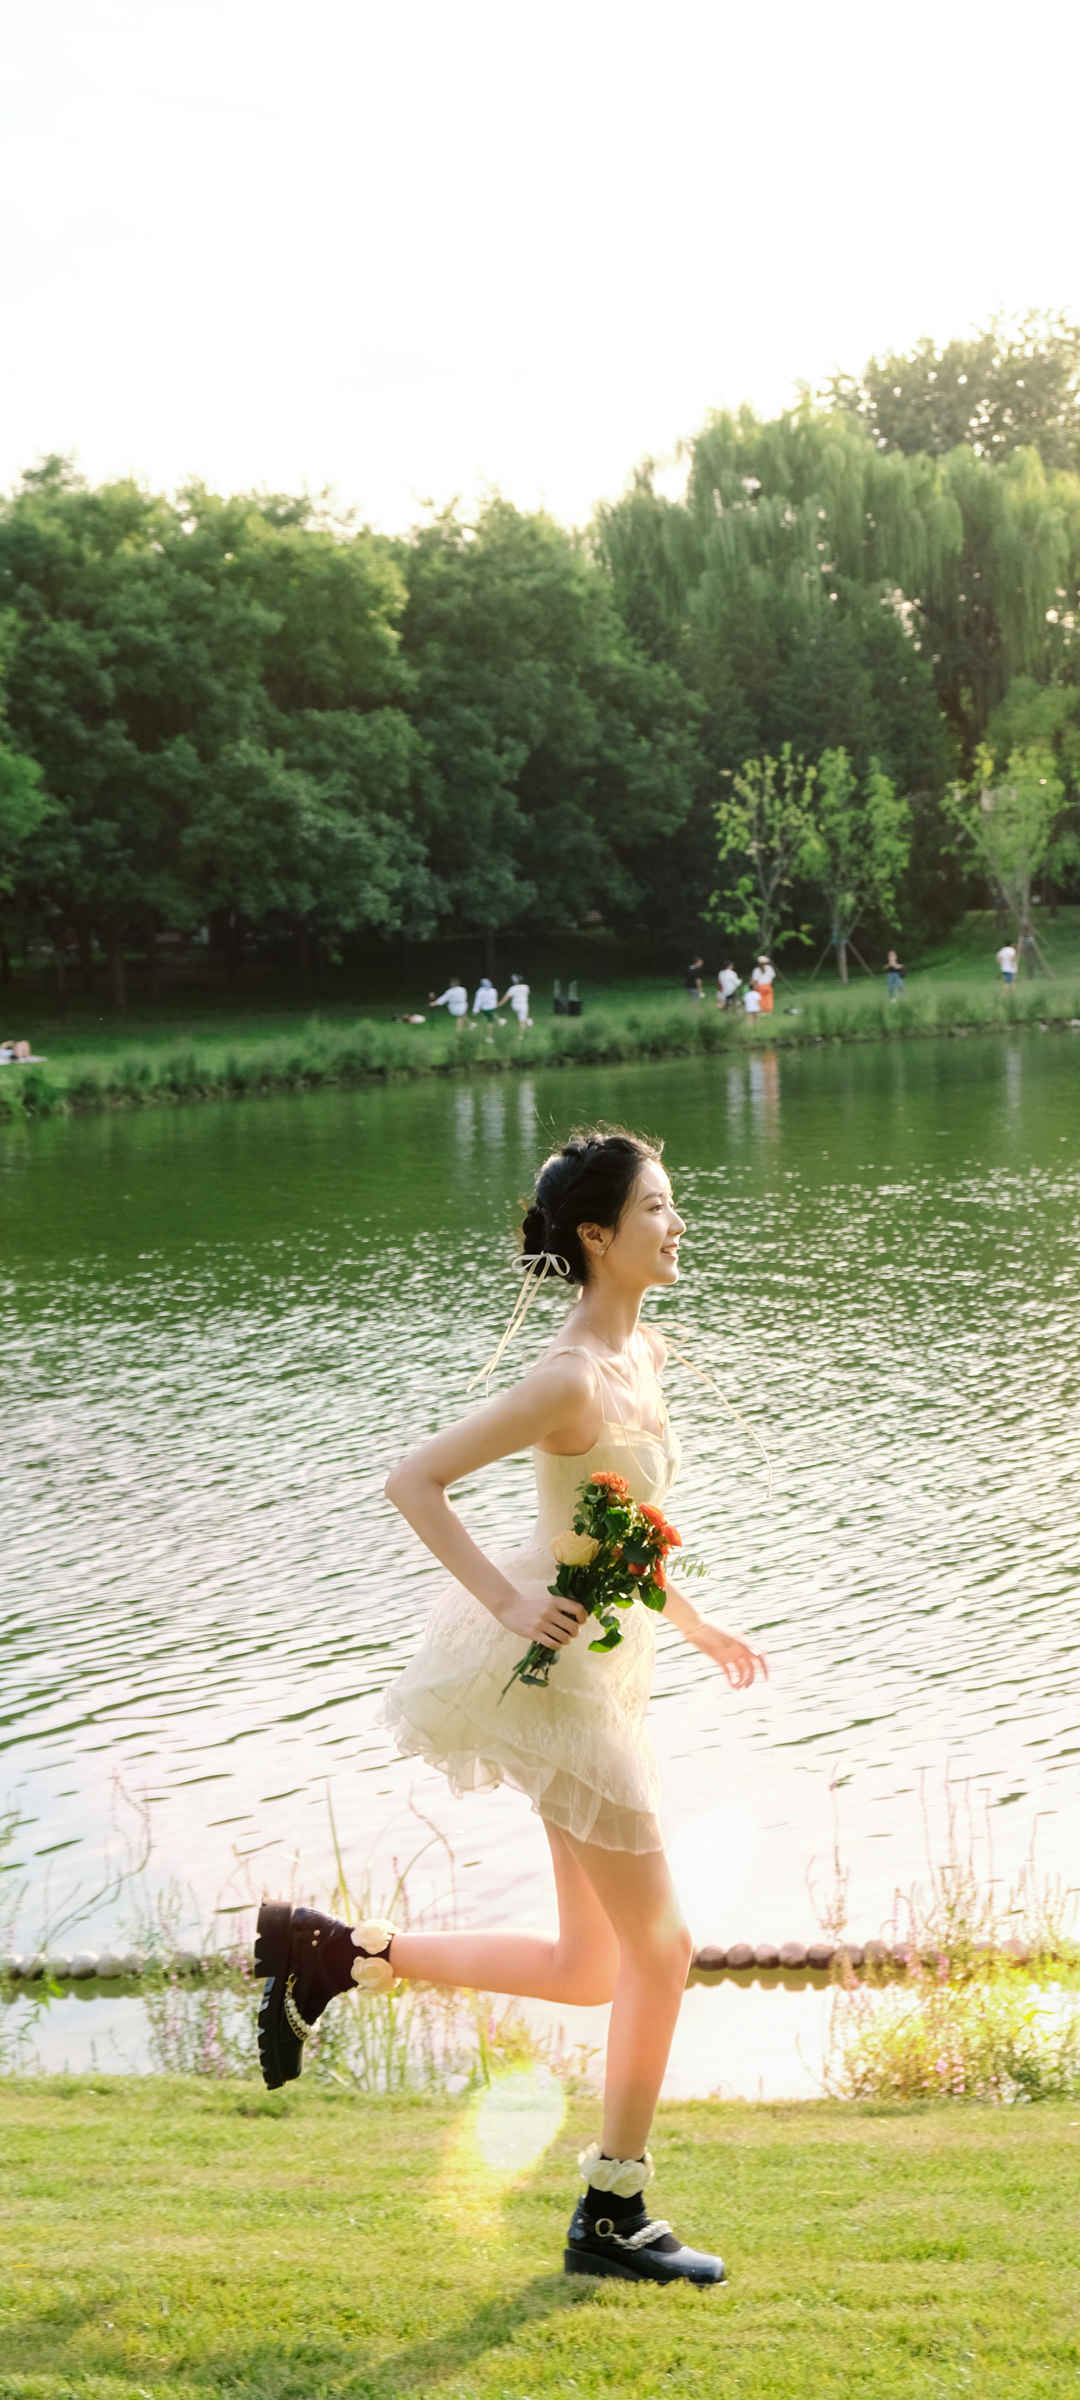 公园 湖边 跑步 美女 小清新 图片